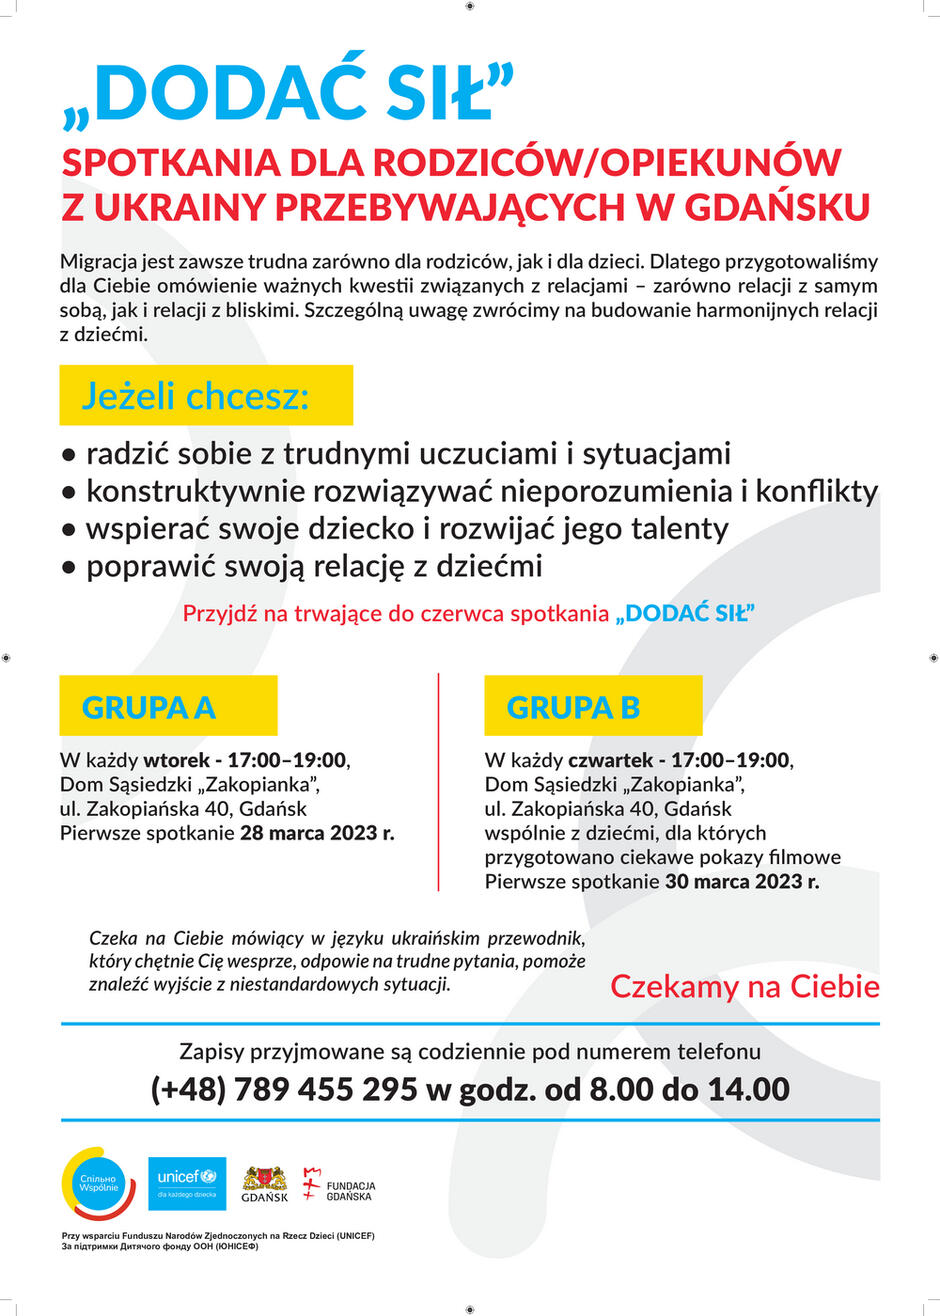 plakat_informacyjny_spotkan_dodac_sil_wersja_po_polsku_